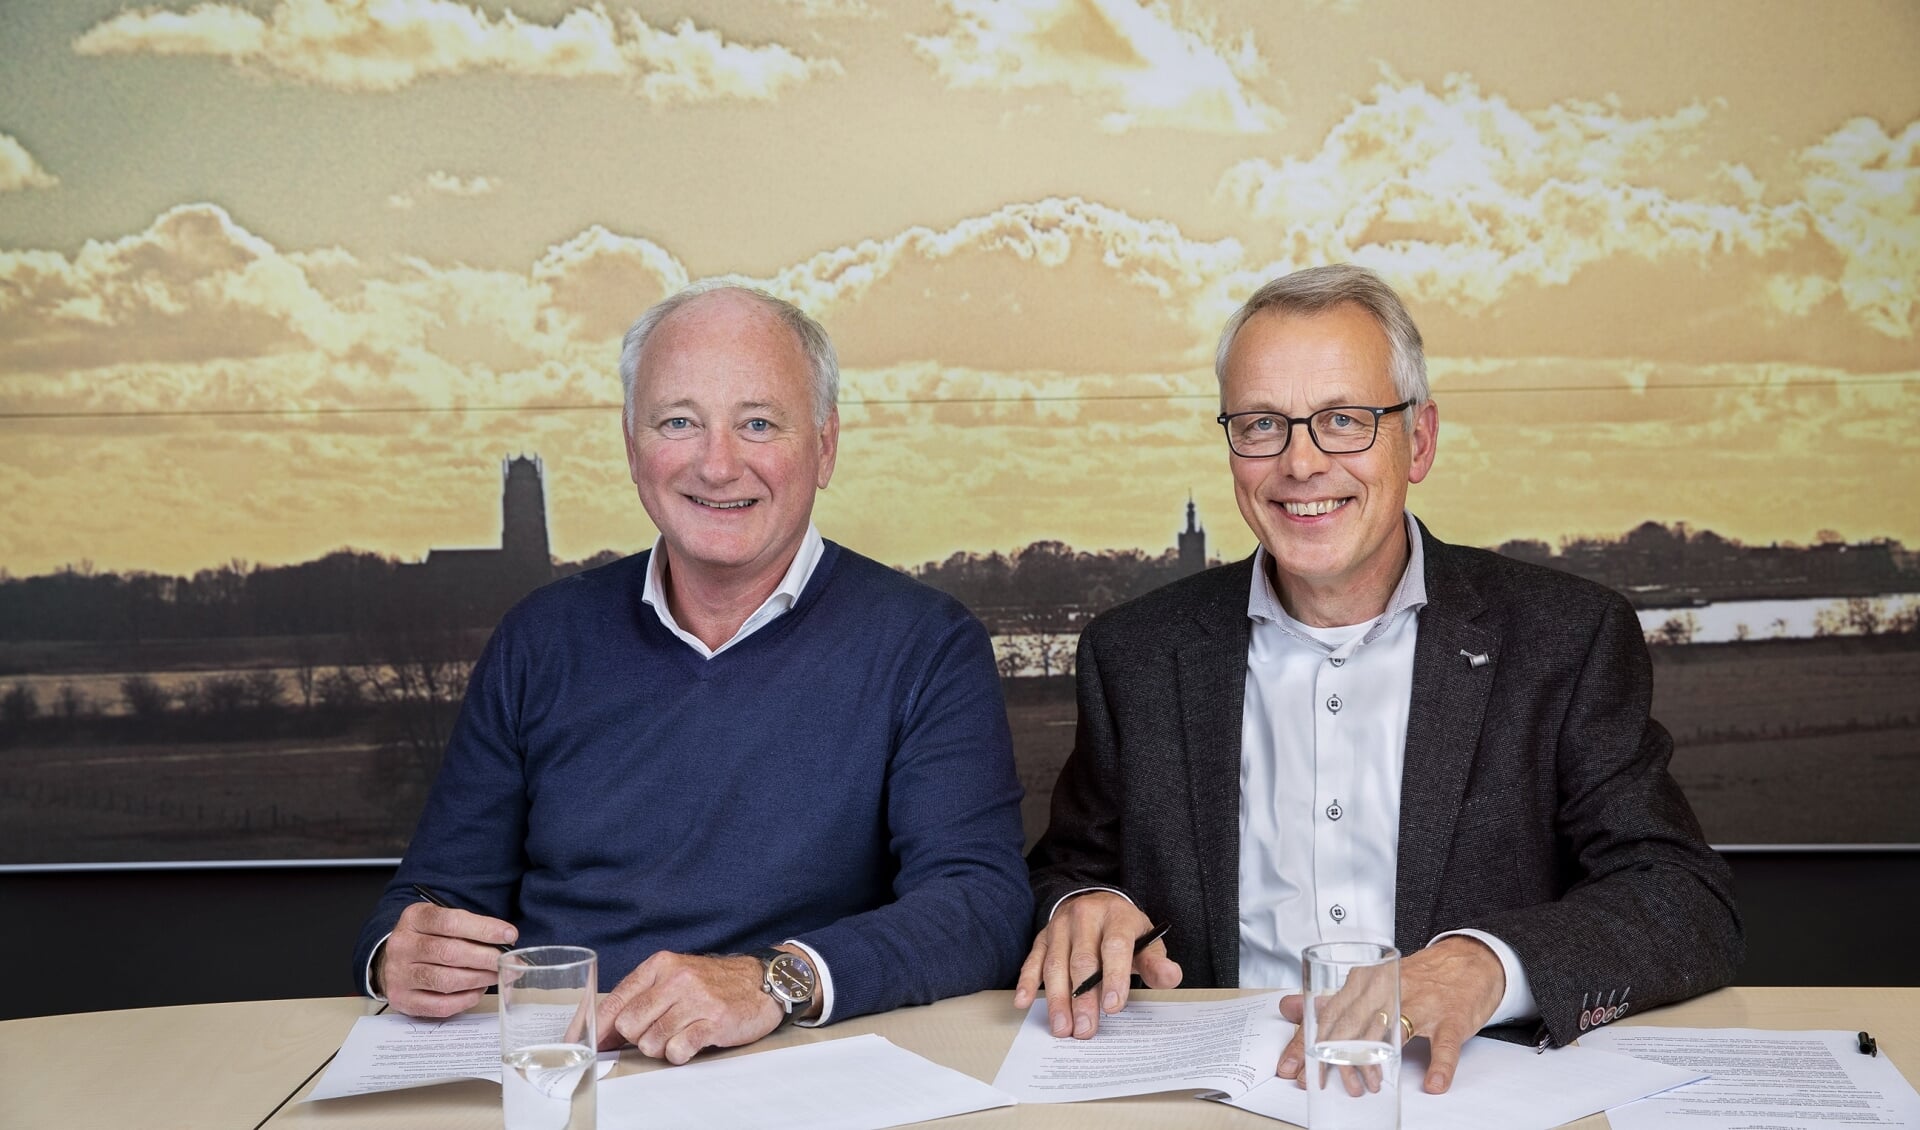 Directeuren Peter van den Heuvel (Woonlinie) en Willem Bijl (Meander) tekenden in 2019 de intentieovereenkomst om samen verder te gaan.